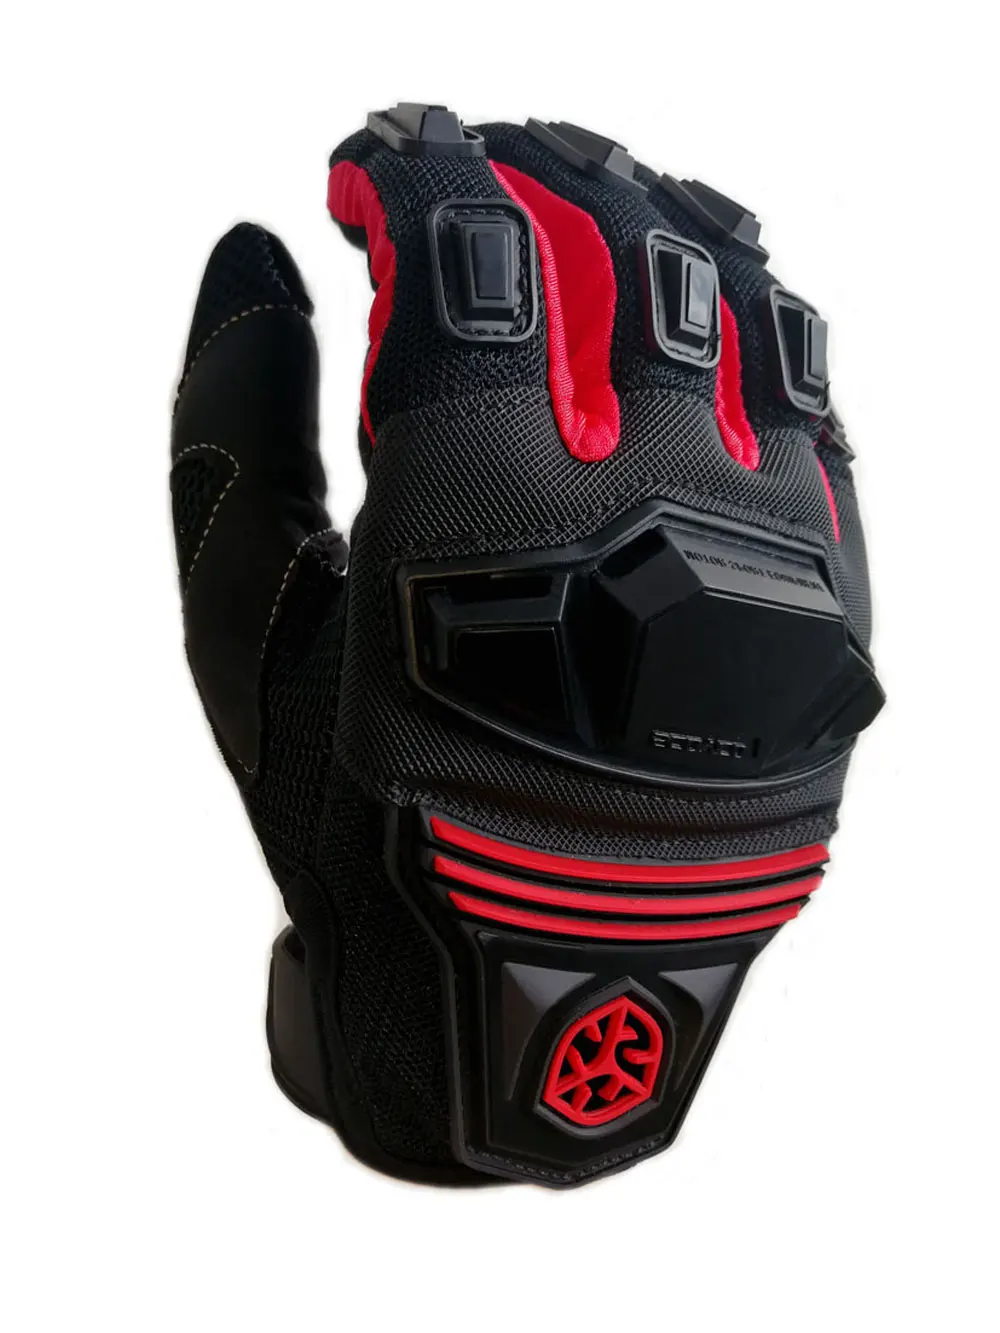 SCOYCO дышащие мотоциклетные перчатки Knuckle усиленные износостойкие MX перчатки для мотокросса полный палец внедорожный скутер мотоцикл MC24